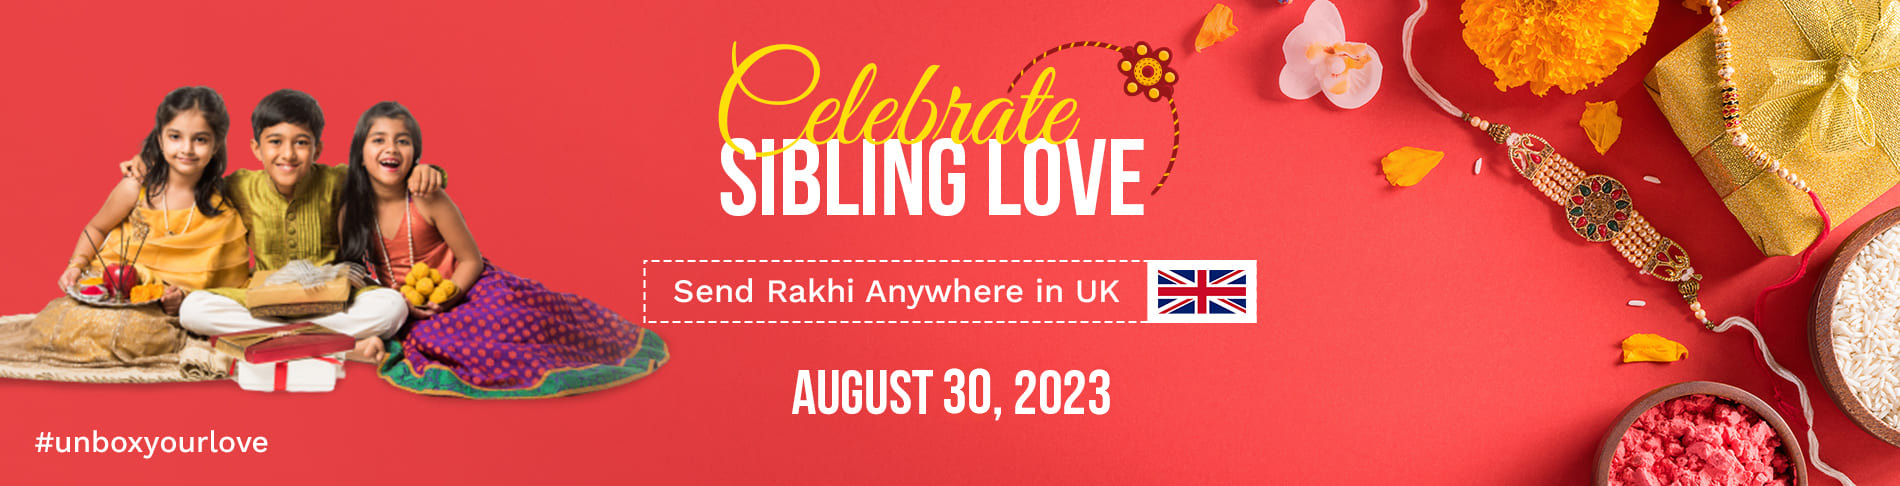 Send Rakhi Gifts 2021 UK